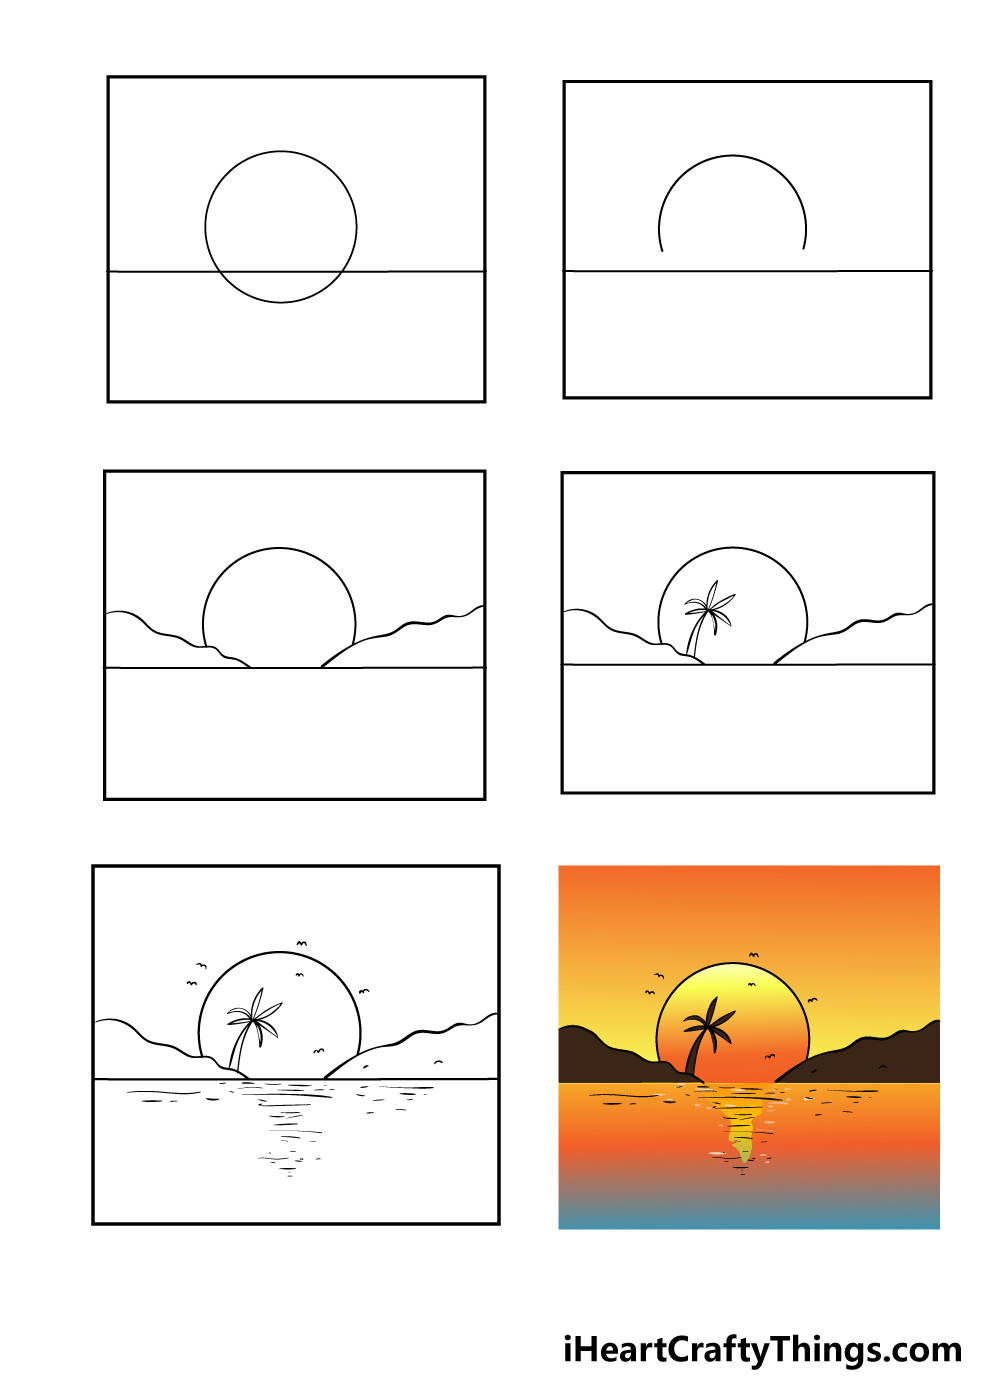 Sunset in 6 steps - Hướng dẫn chi tiết cách vẽ cảnh hoàng hôn đẹp đơn giản với 6 bước cơ bản